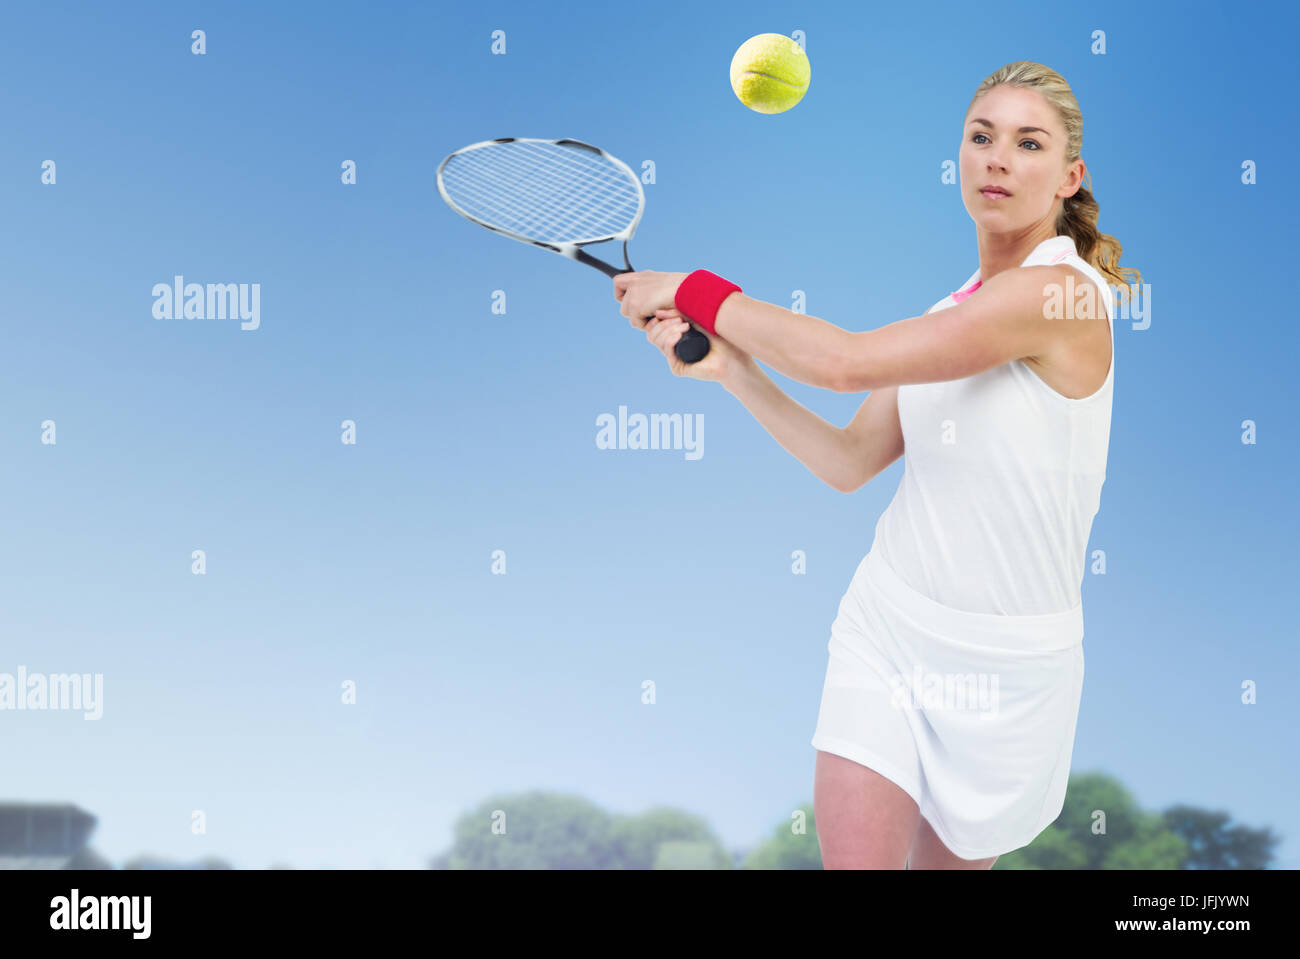 Sportif jouer au tennis avec une raquette contre l'avis d'un terrain de jeu contre le ciel bleu Banque D'Images